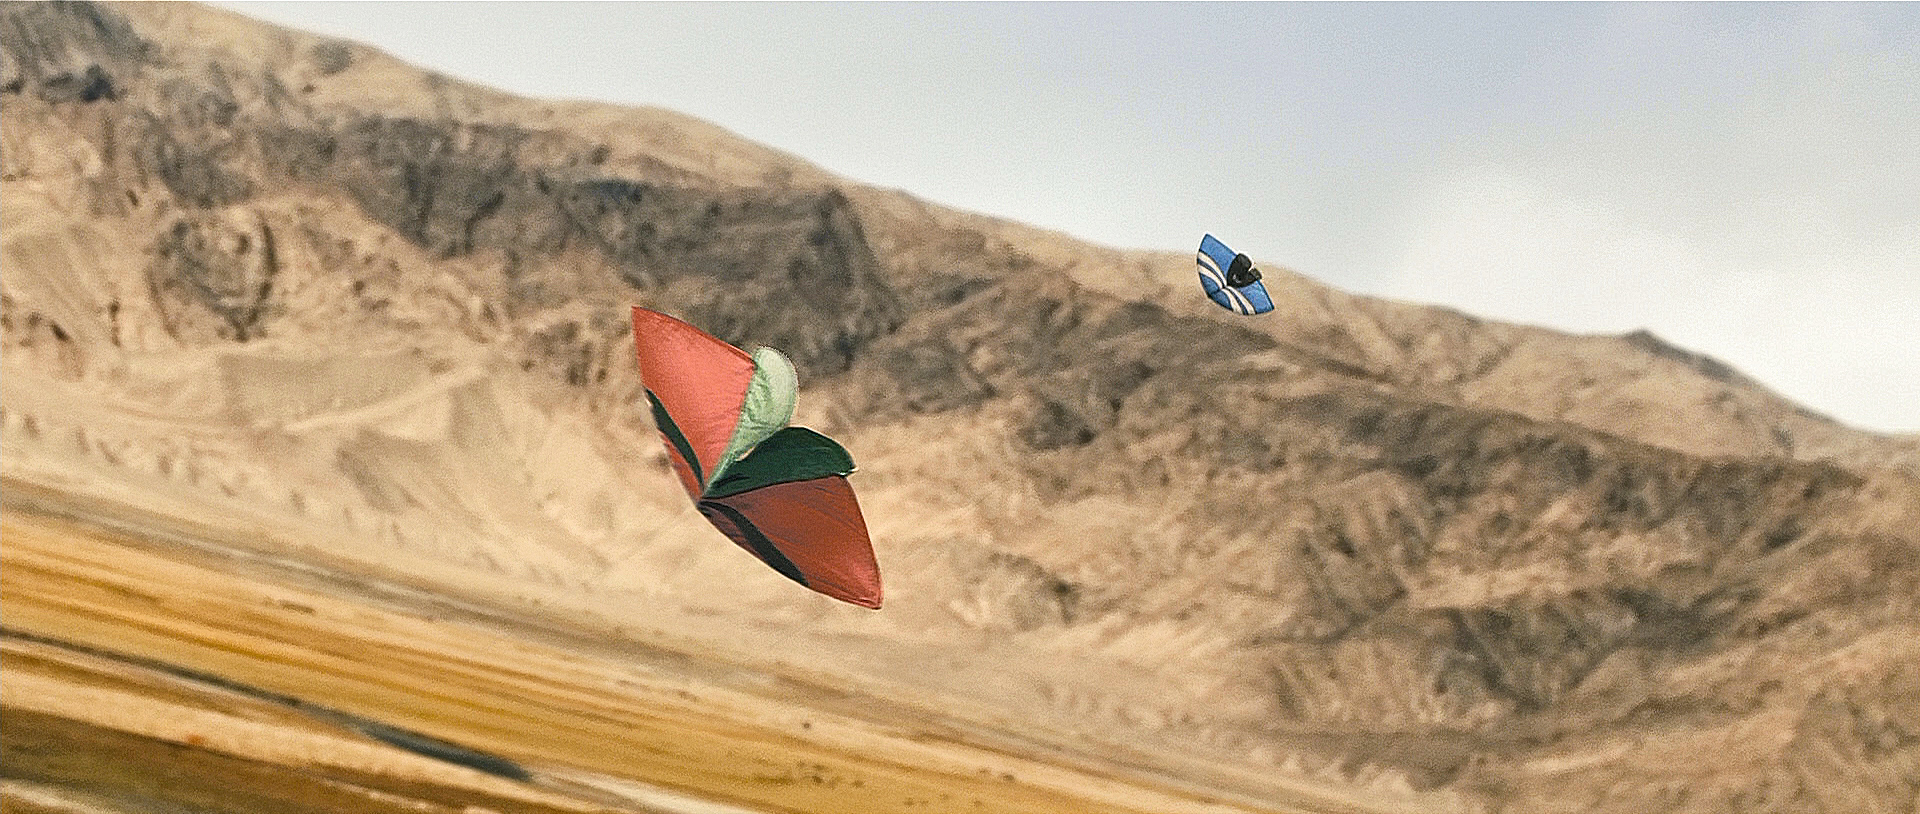 The Kite Runner 01.jpg